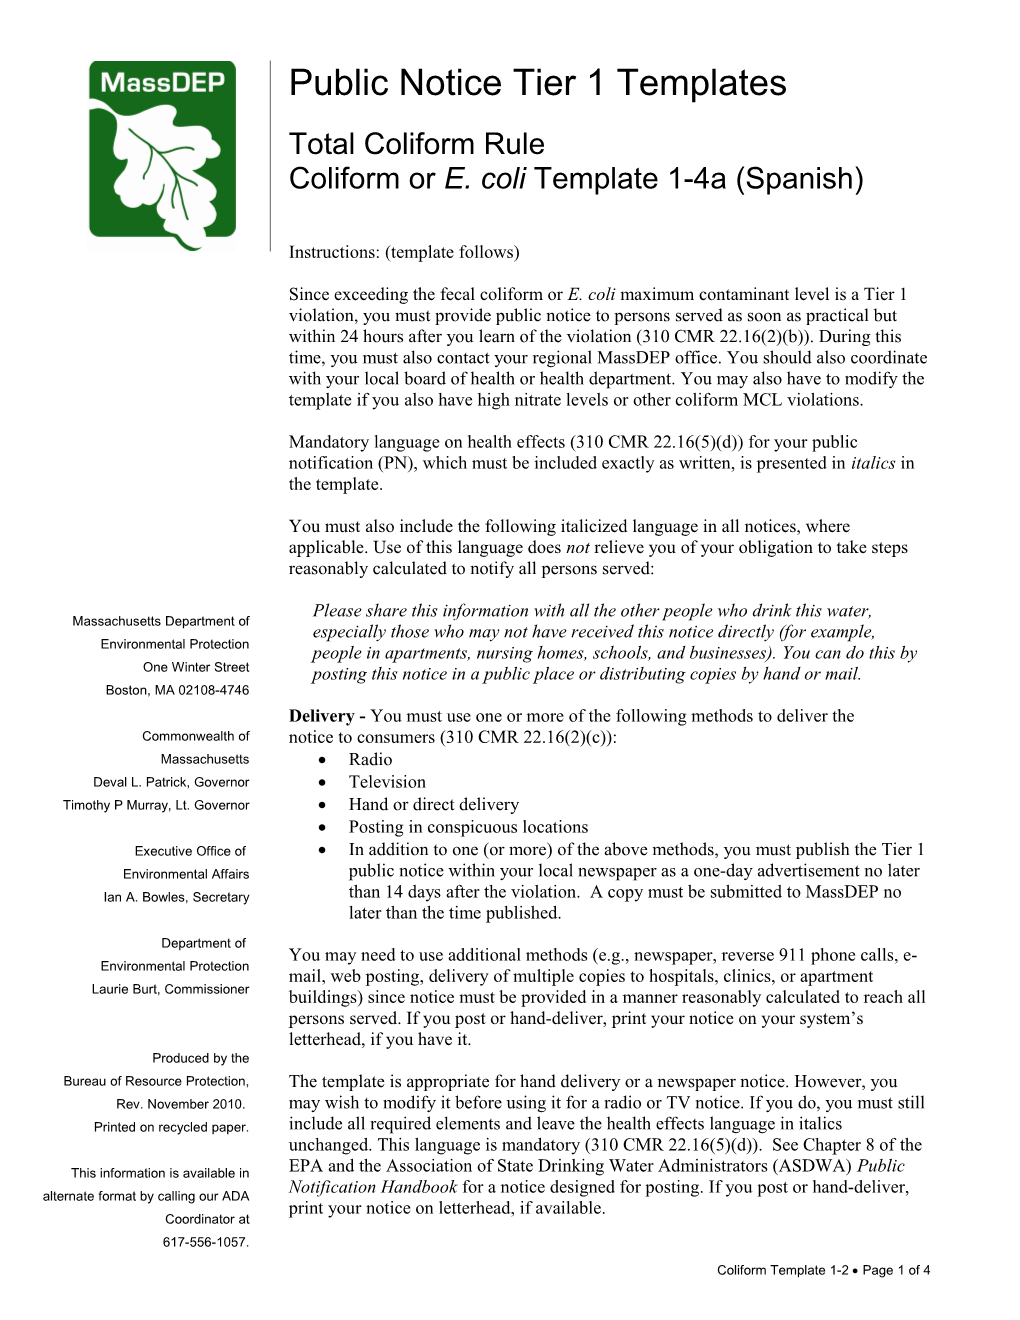 Coliform Or E. Coli Template 1-4A (Spanish)